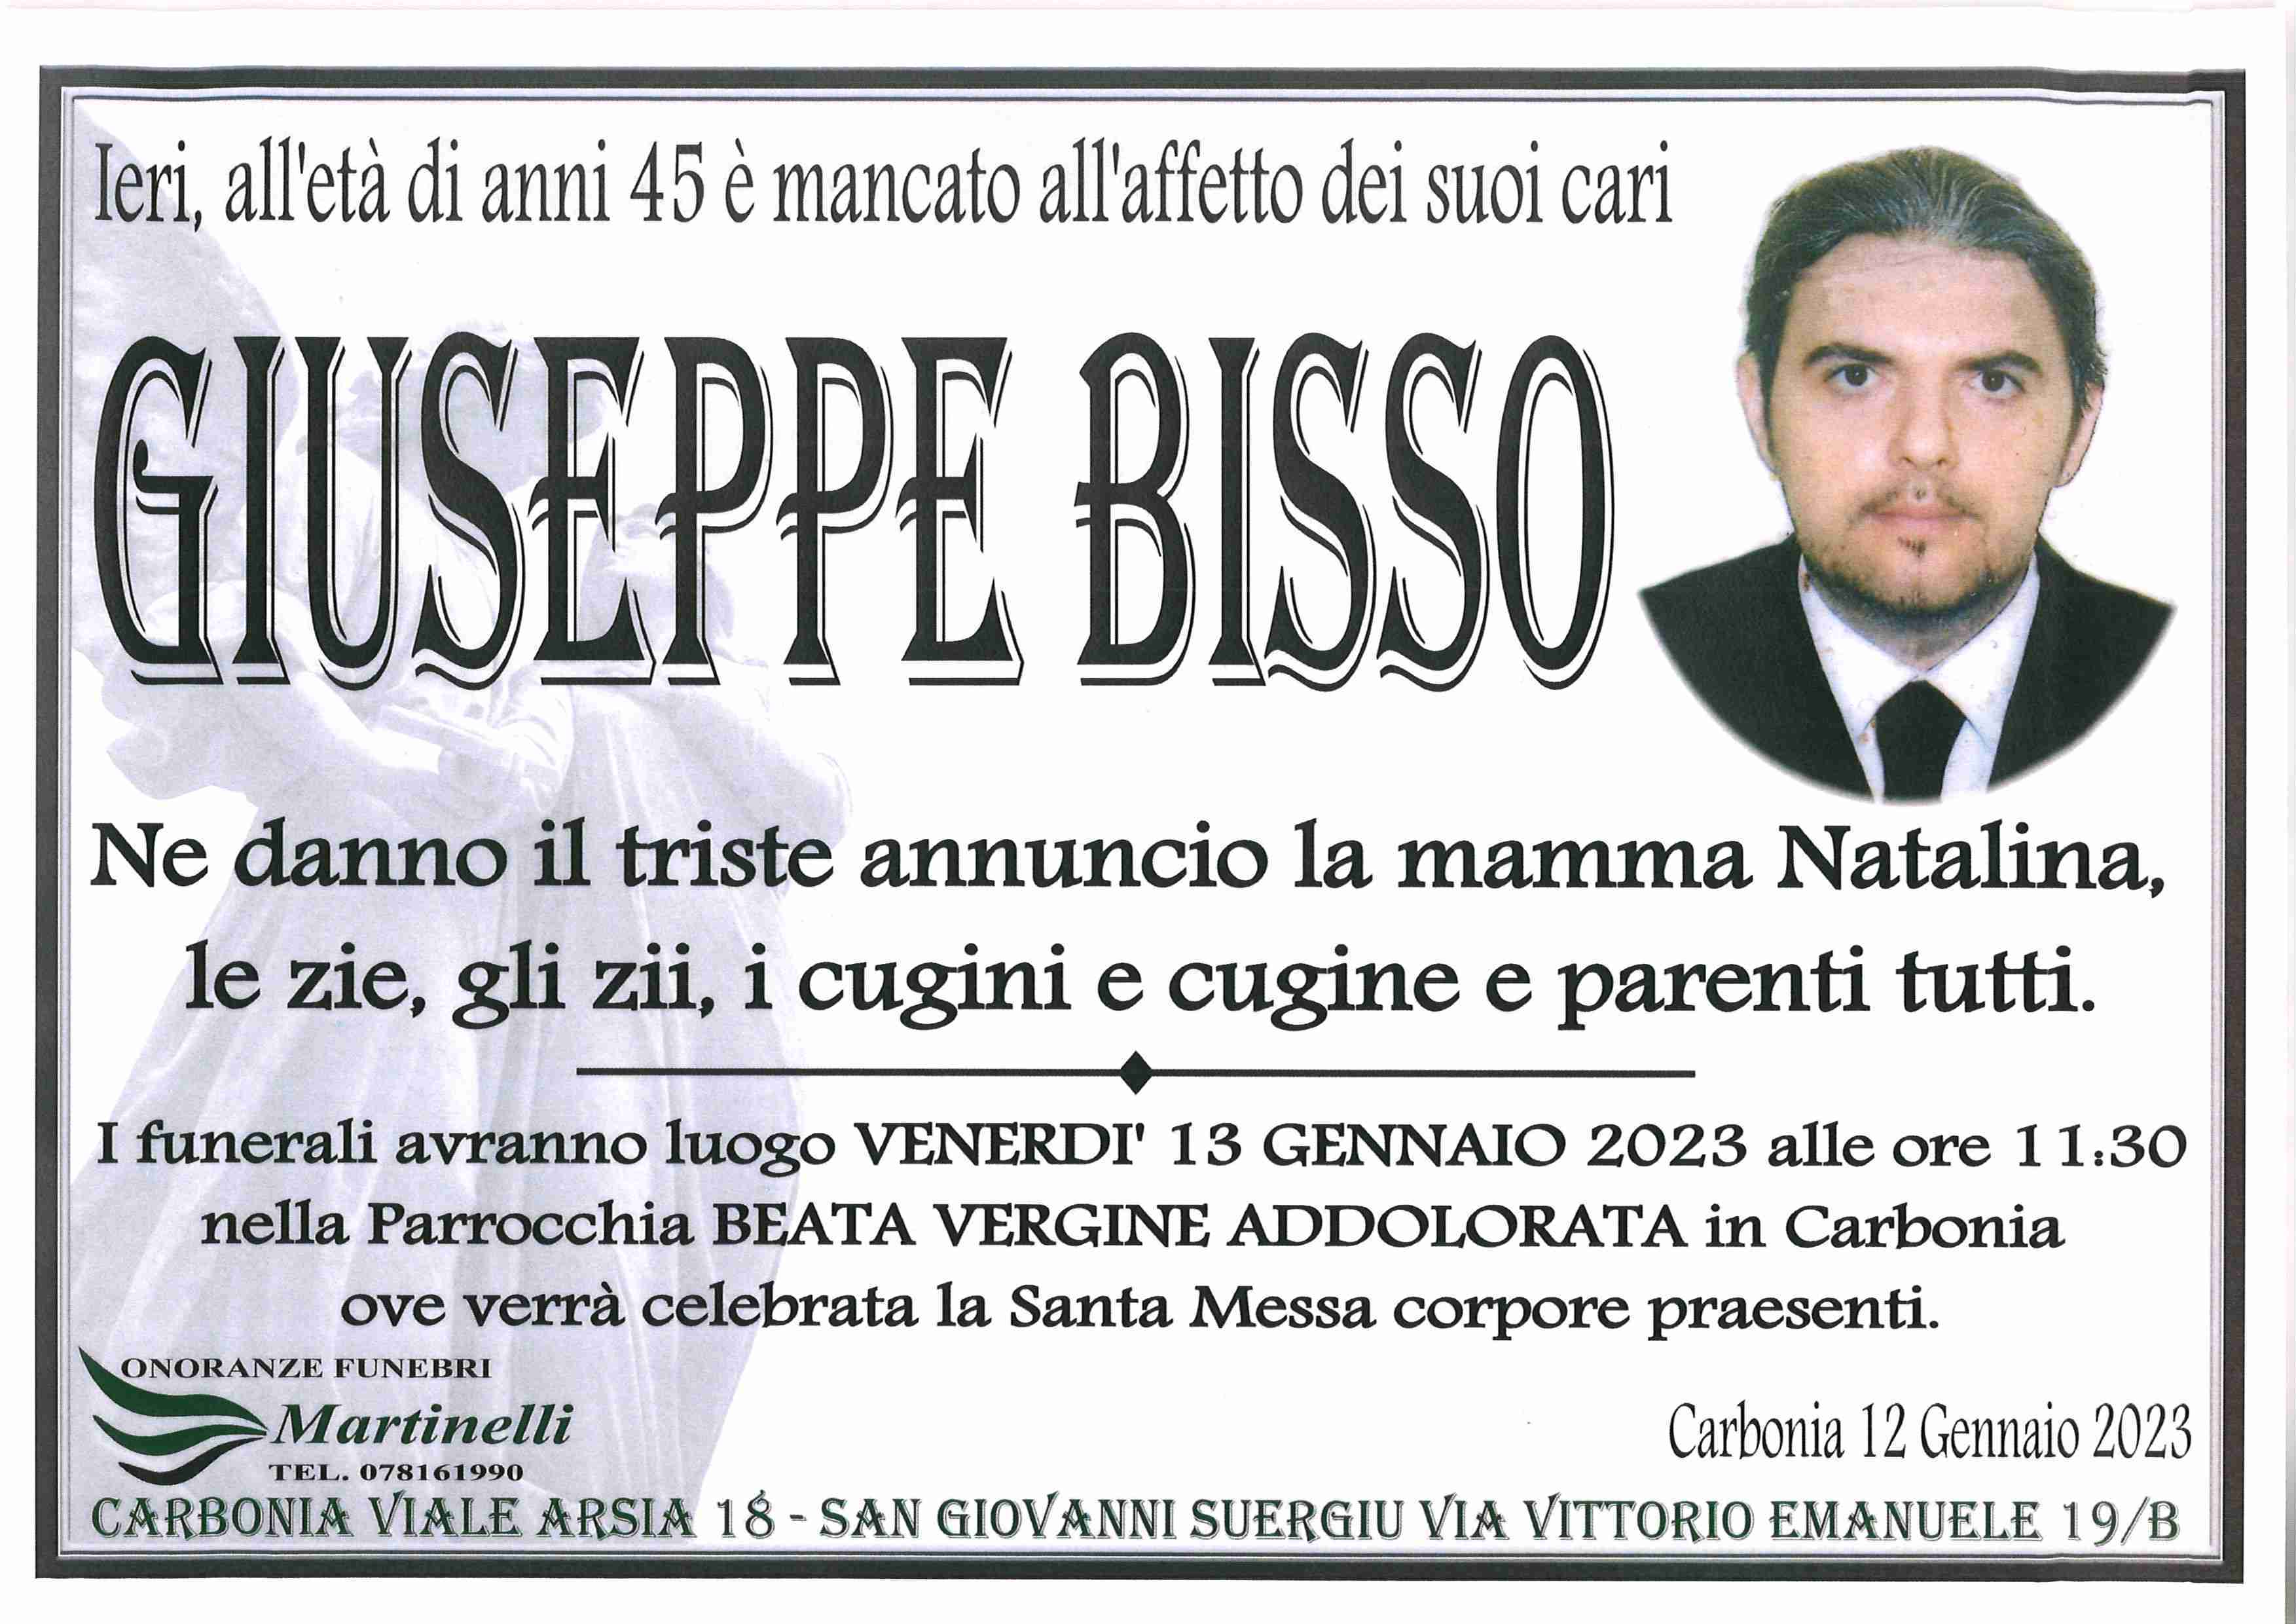 Giuseppe Bisso